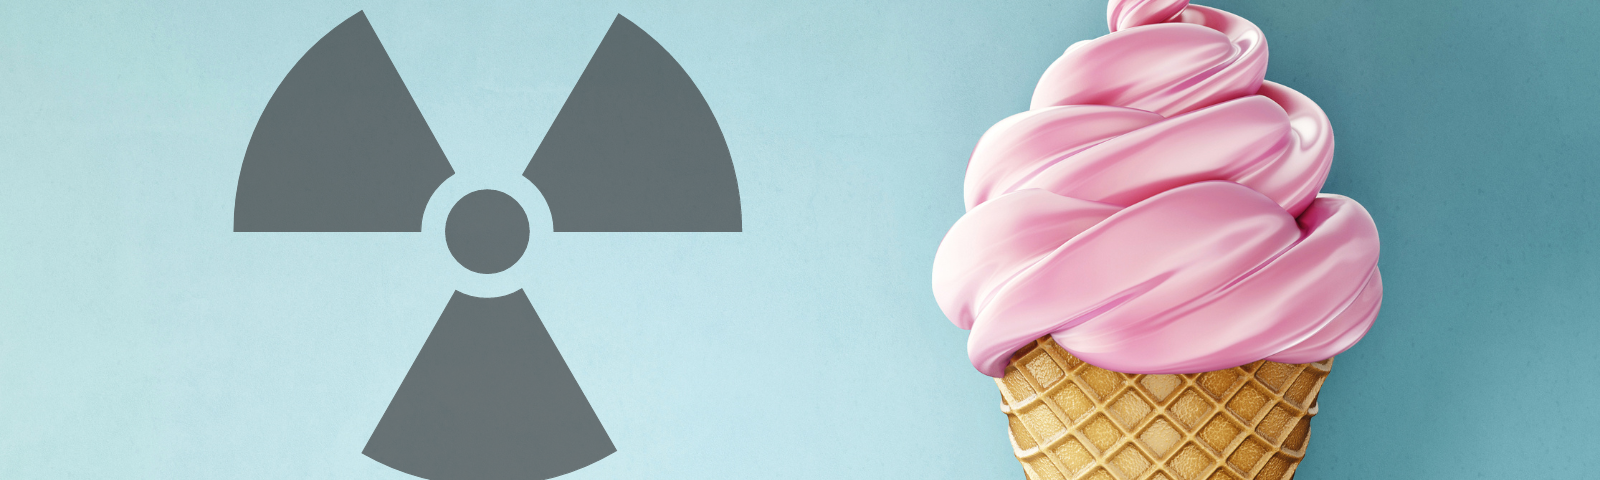 Ice cream cone with radioactive symbol next to it